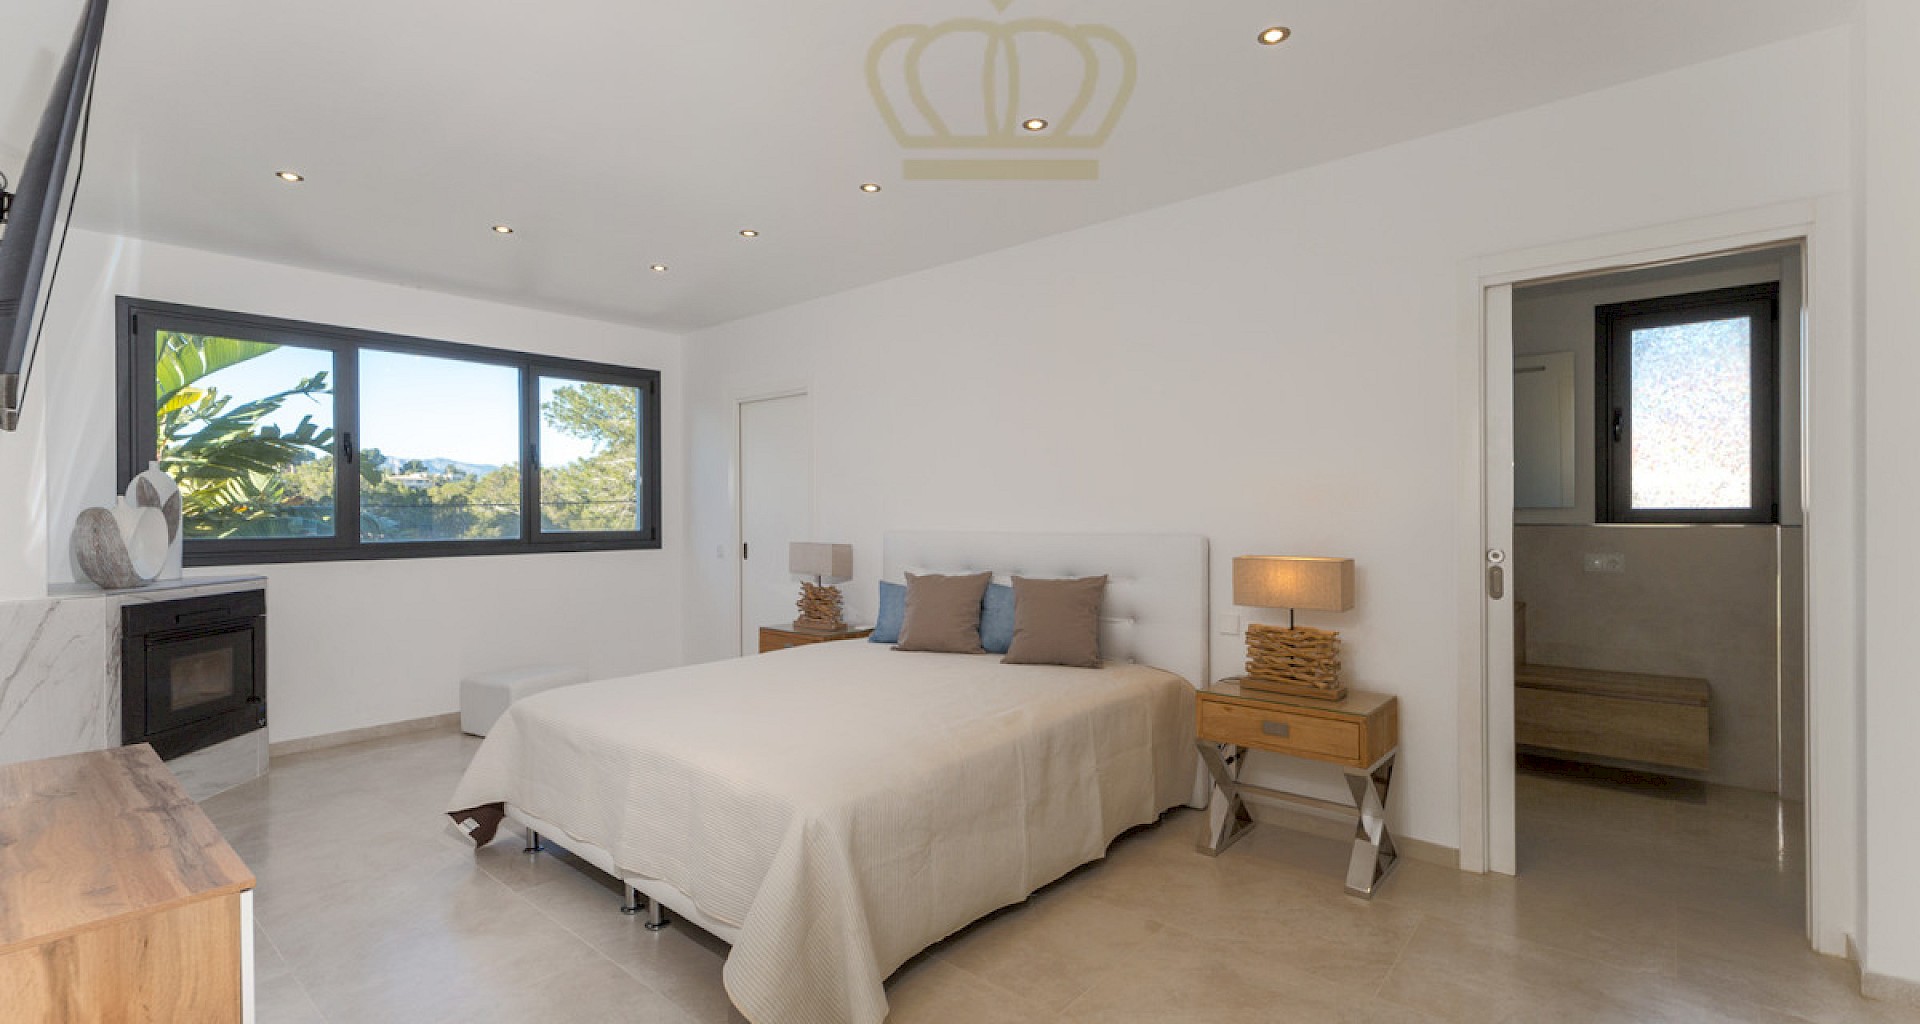 KROHN & LUEDEMANN Grosse moderne Villa in Santa Ponsa mit Pool kaufen 